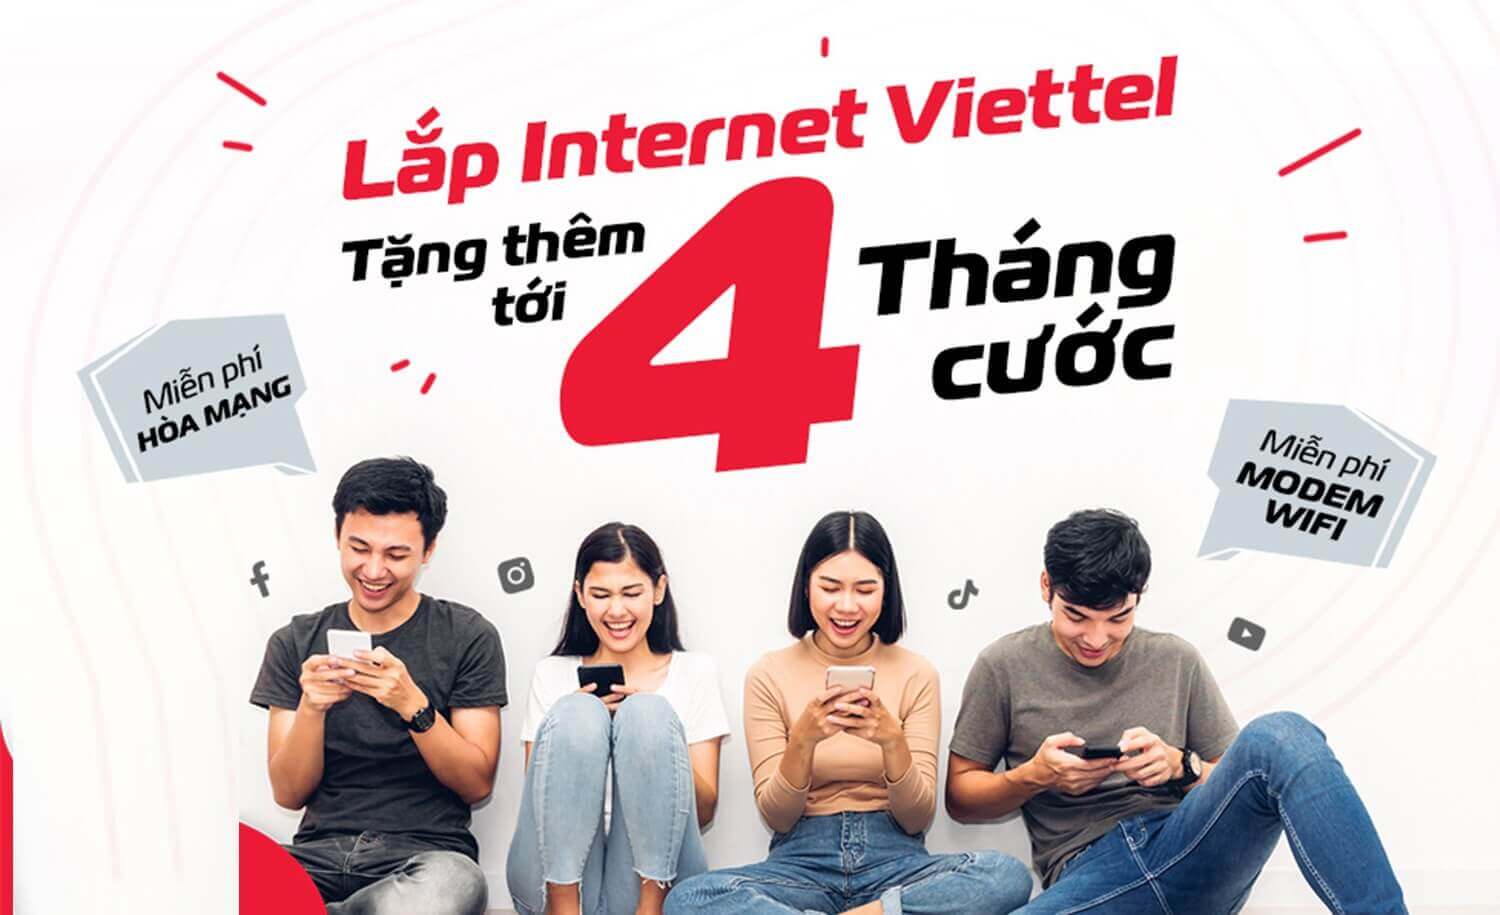 Lắp mạng Viettel Internet WiFi cáp quang tại Phú Xuyên, Hà Nội giá tốt nhất